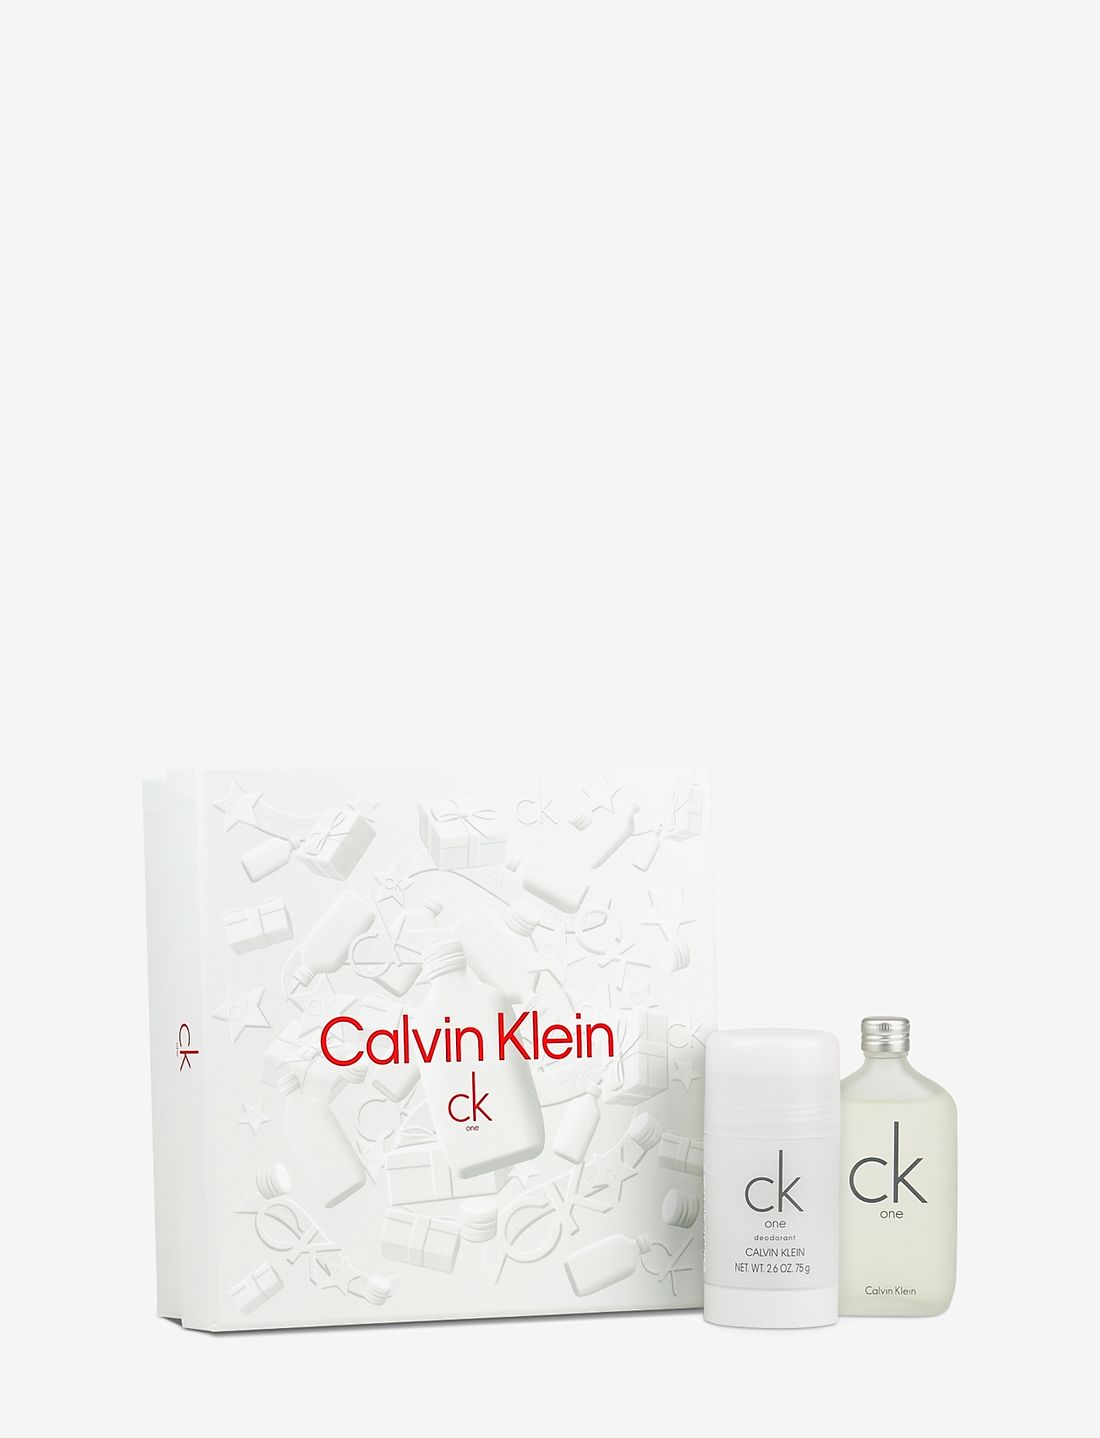 & One Deostift - cremer Klein Fragrance Deo Ck 50ml/ Stick Calvin Klein 75ml Edt Calvin